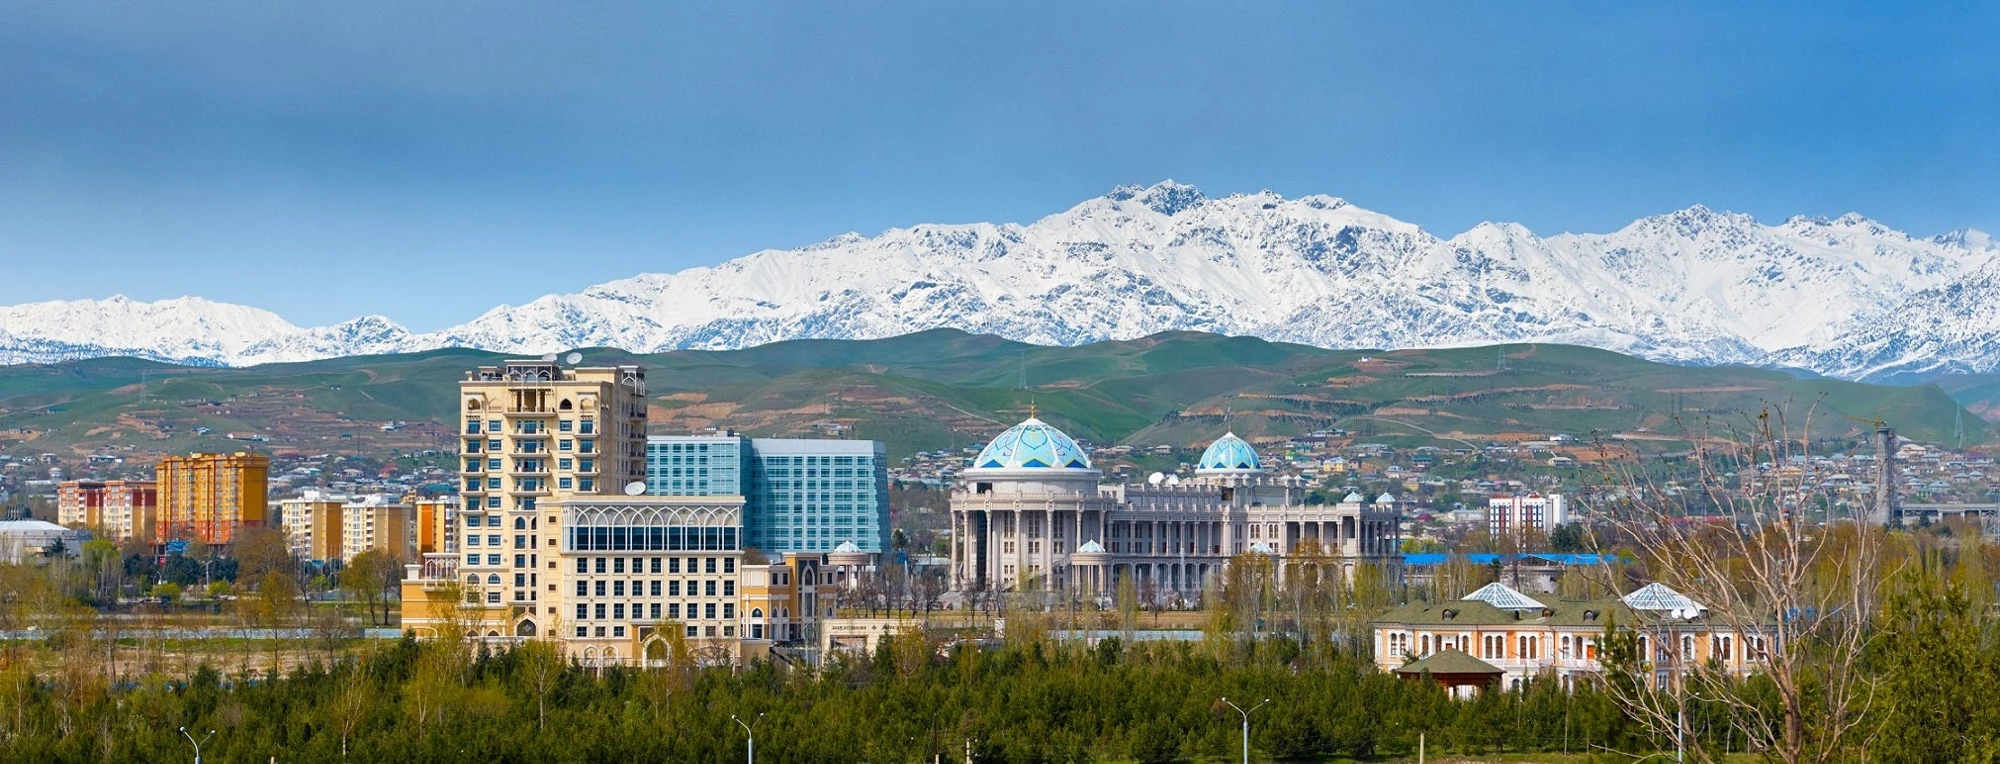 Dushanbe, Tajikistan. Photo: ©[truba71]/Adobe Stock